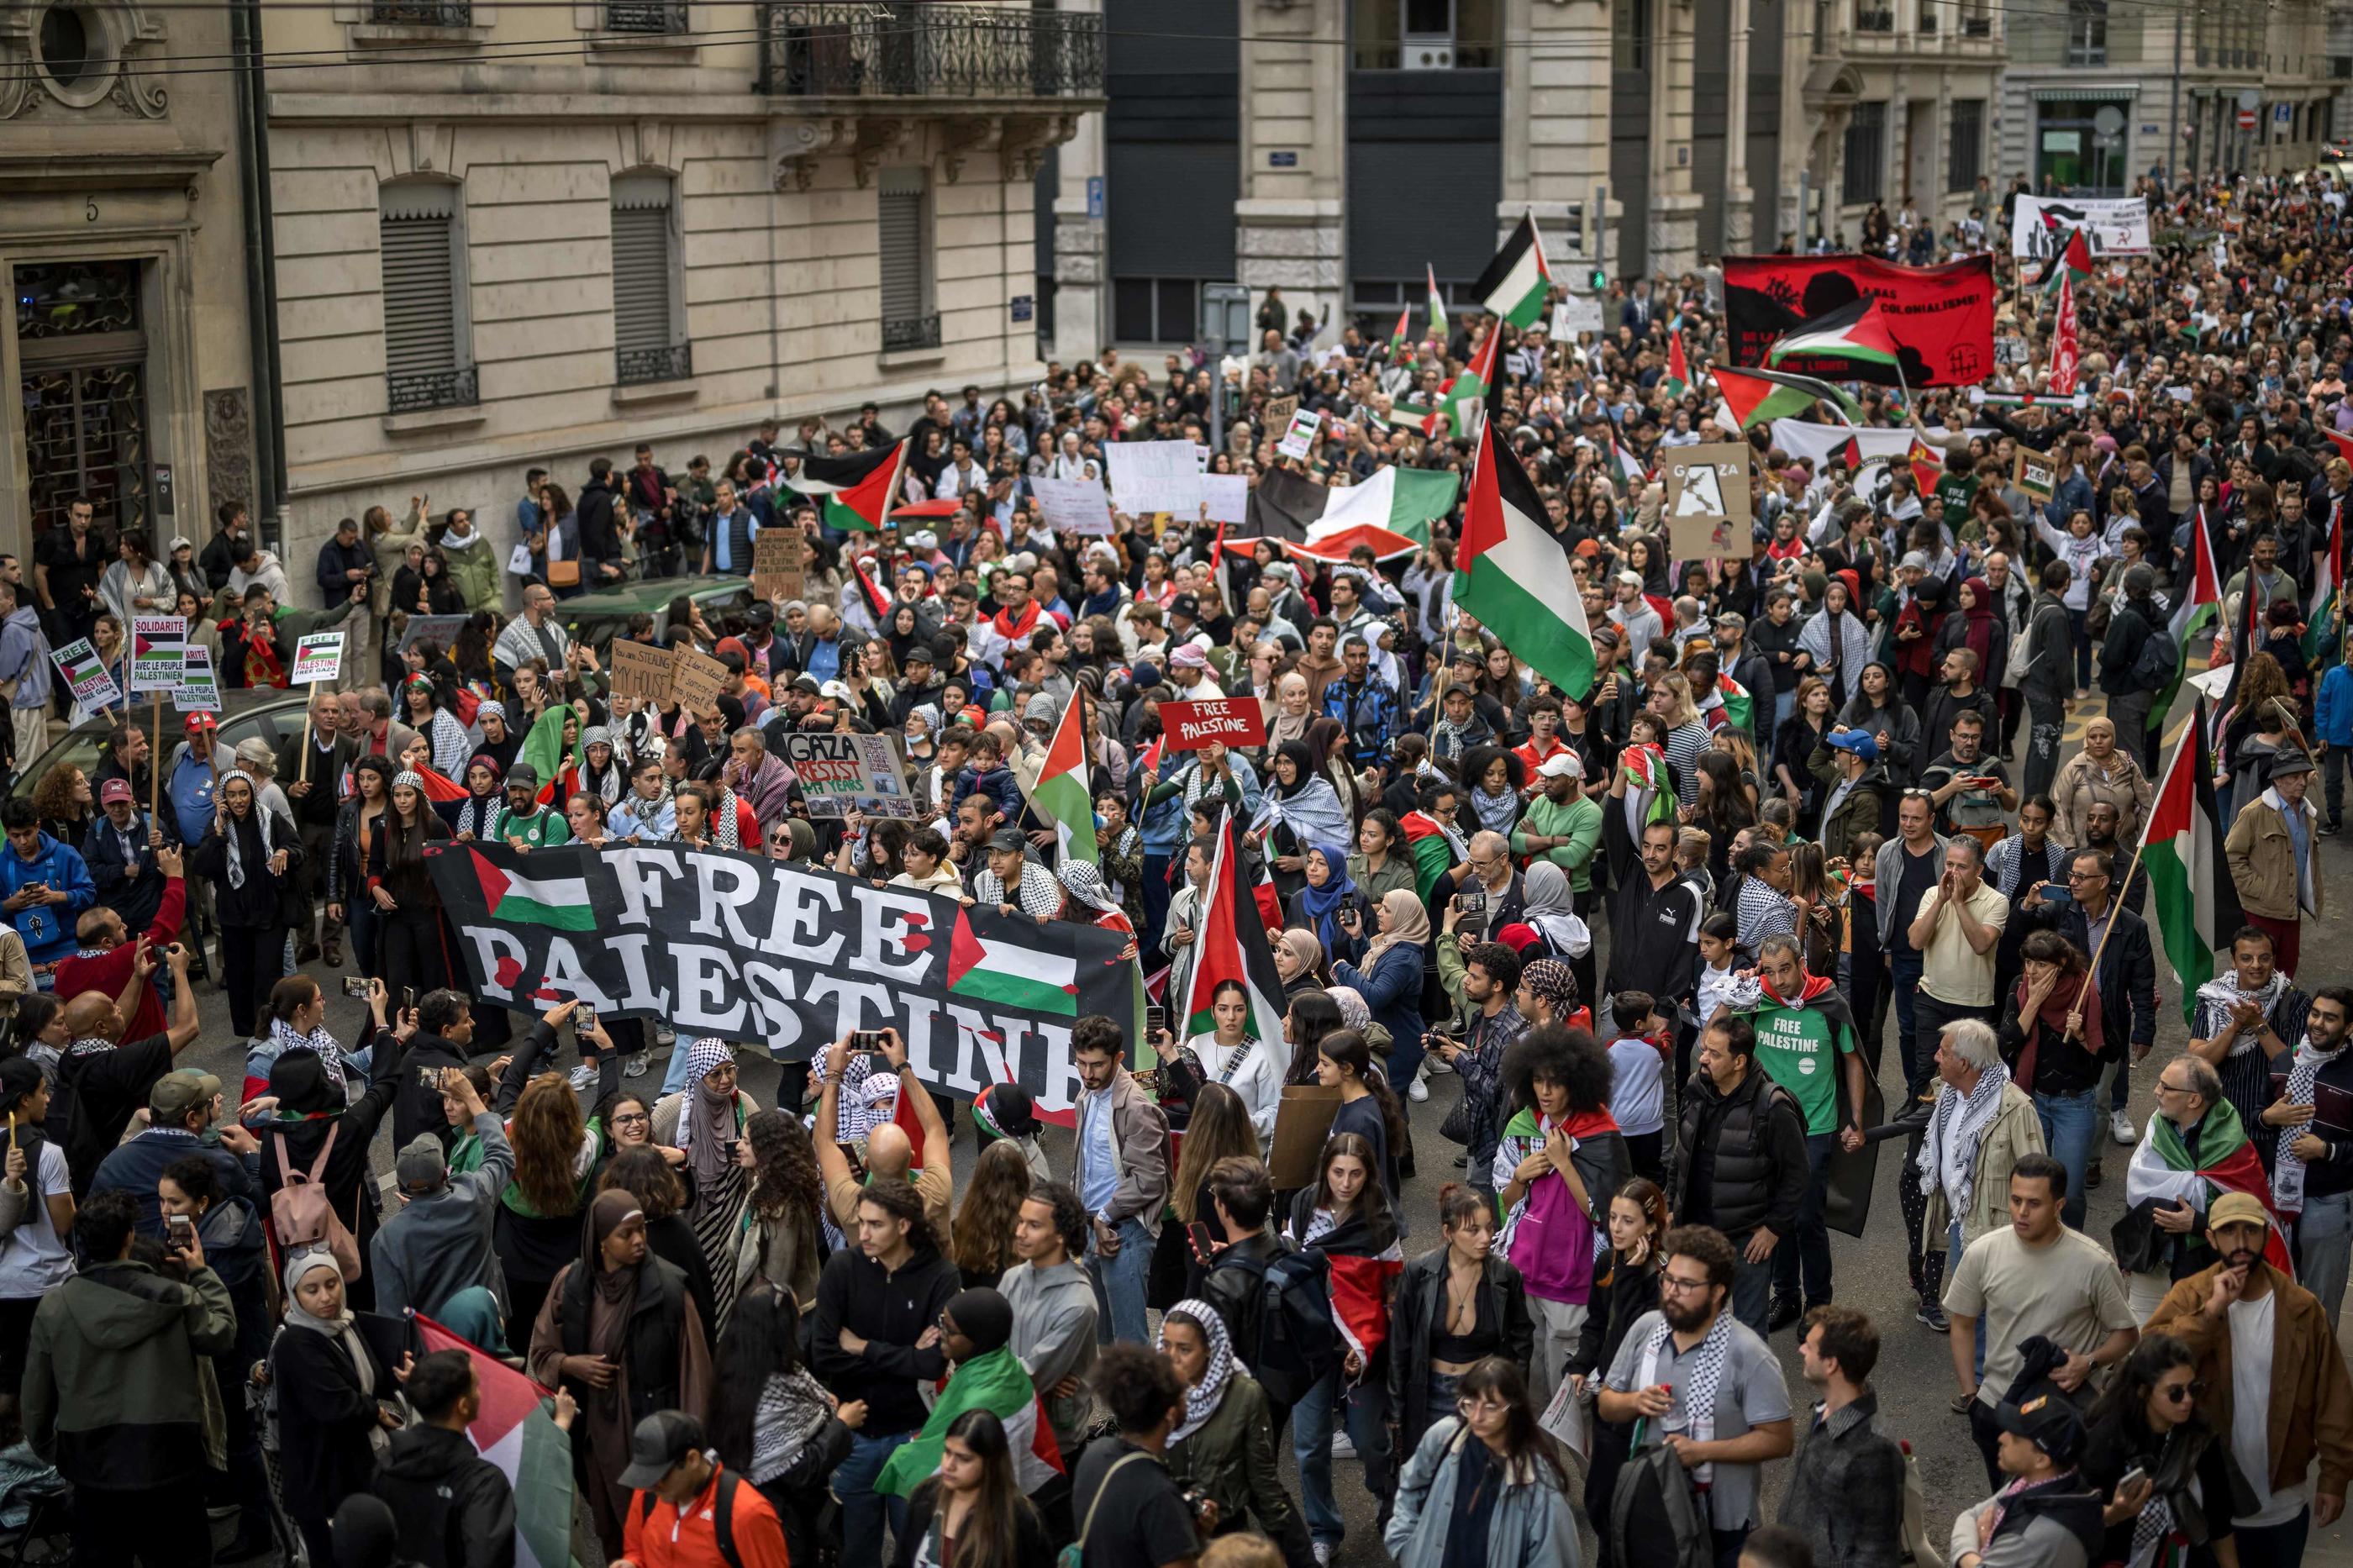 Des milliers de personnes ont manifesté à Genève derrière une banderole "Libérez la Palestine". AFP/Fabrice Coffrini